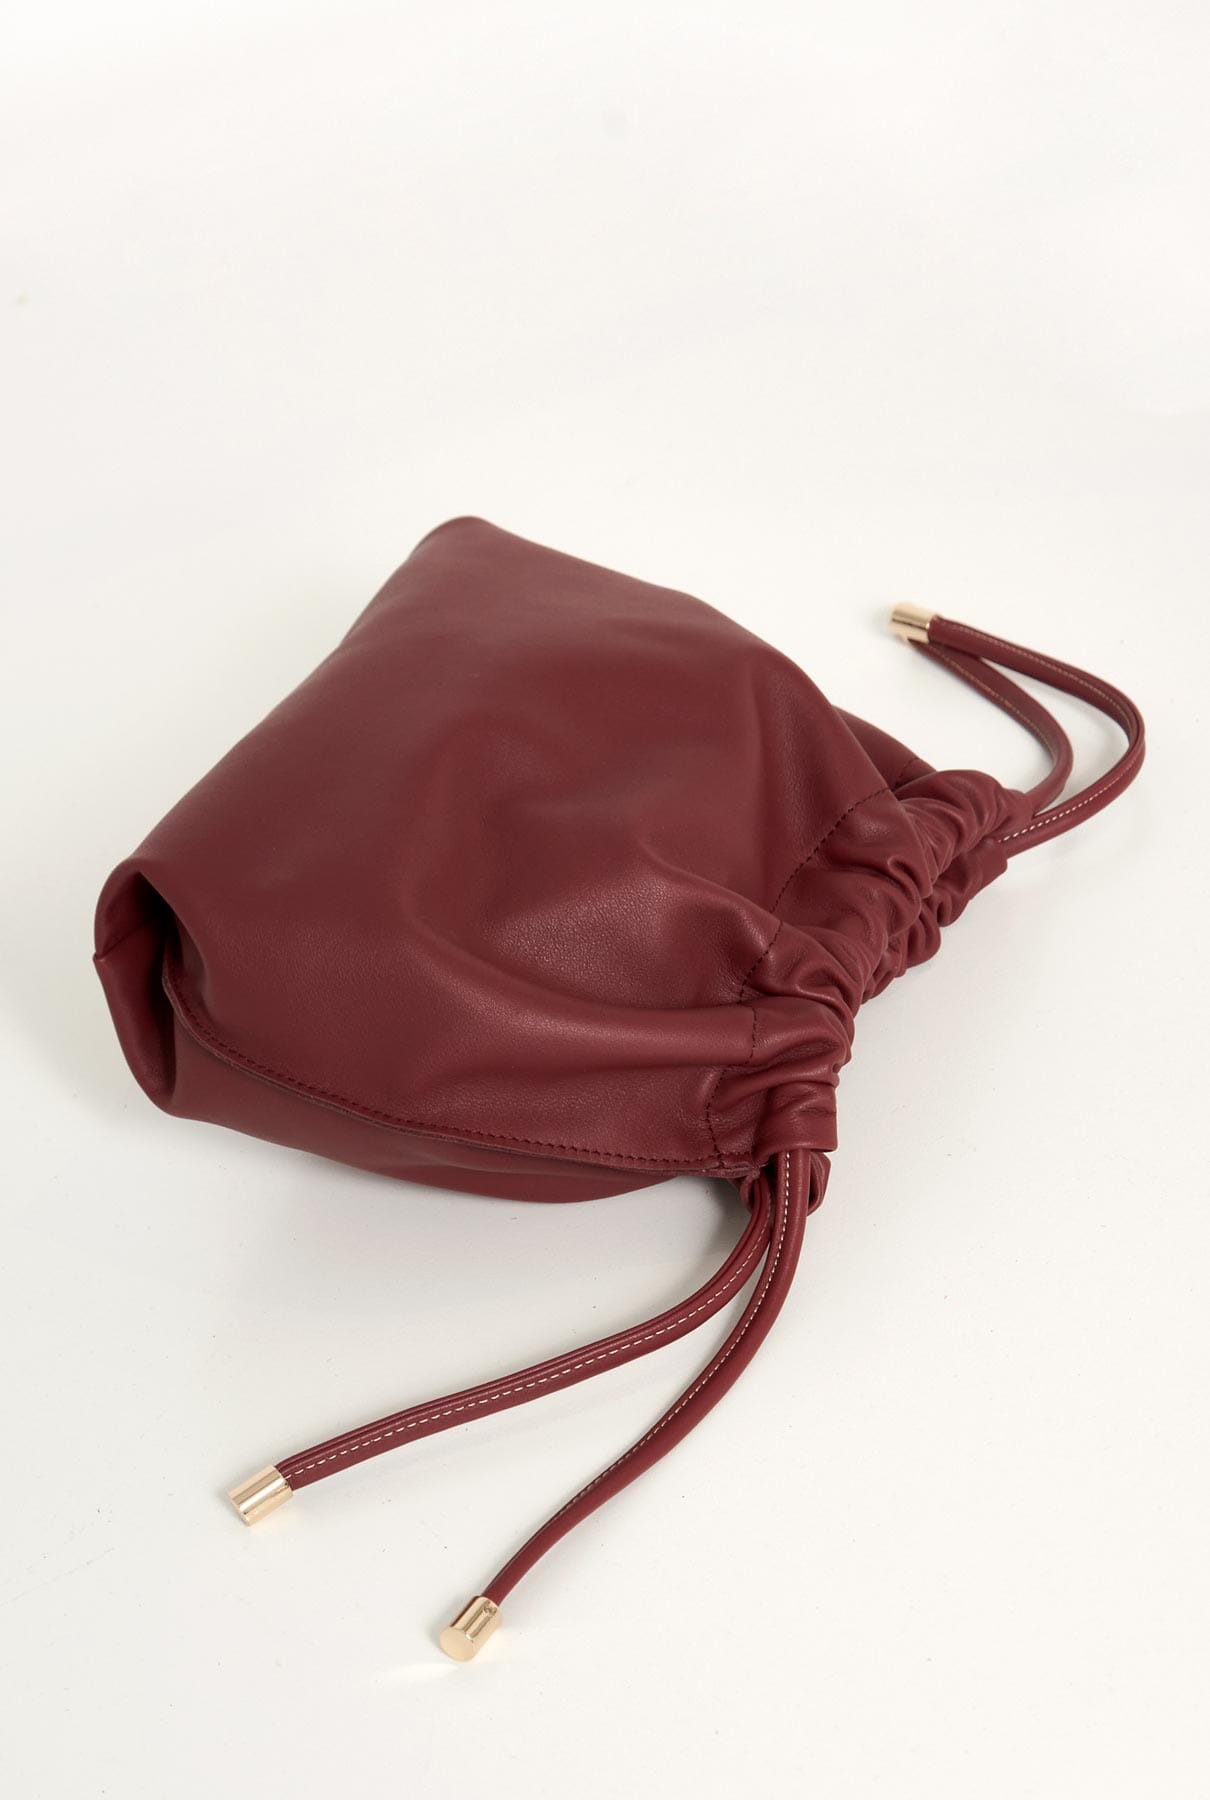 The Mini Carmen Bag Burdeos Shoulder Bag The Bag Lab 